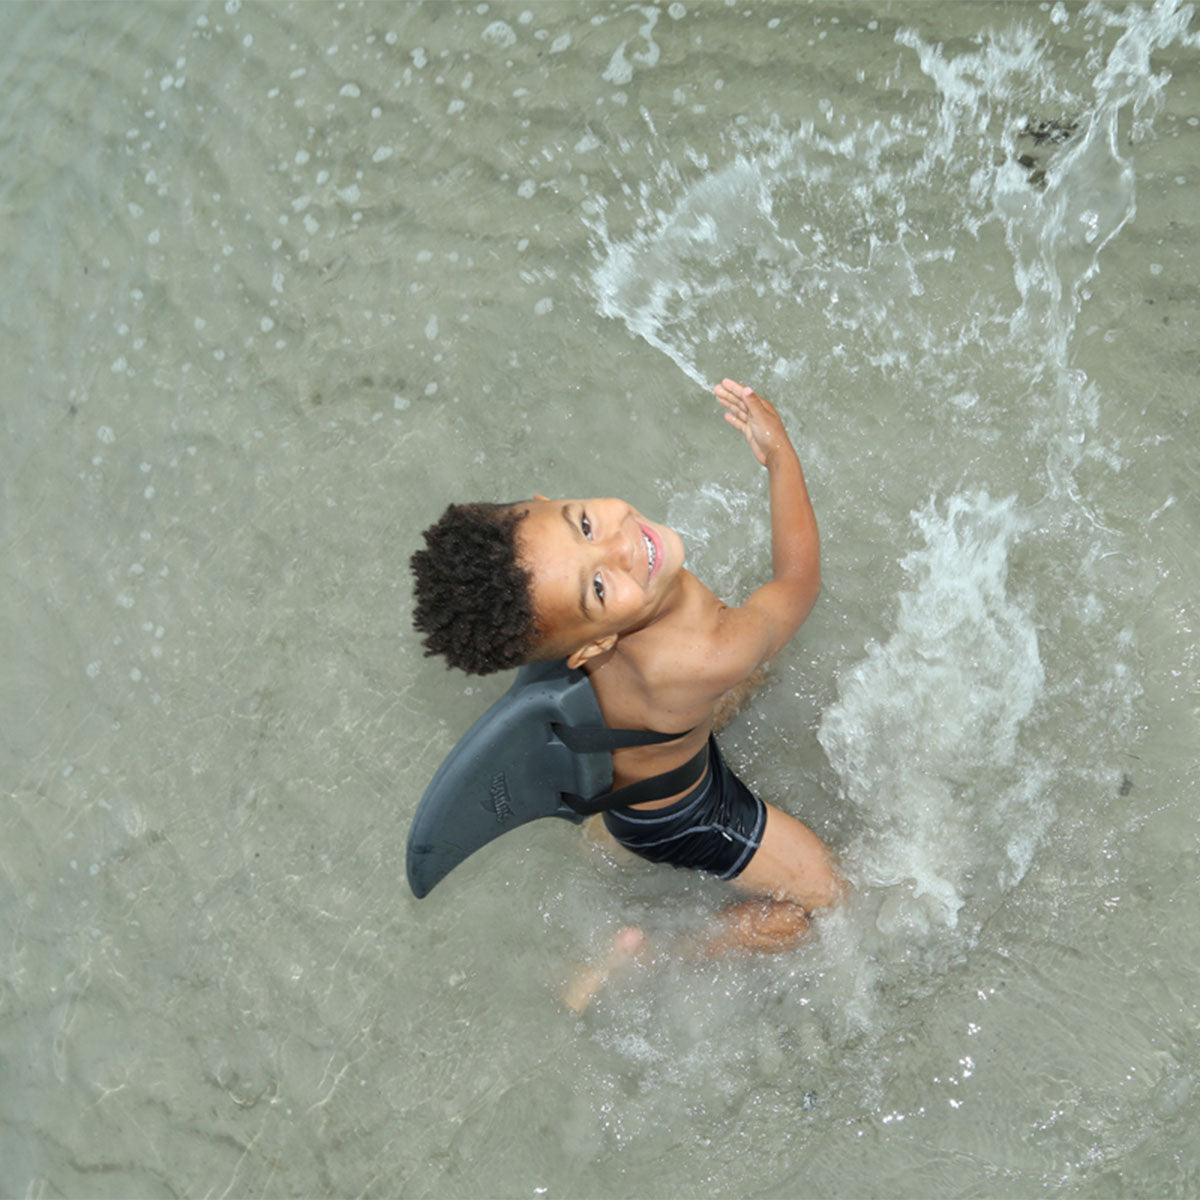 Voor waterratjes die lekker willen zwemmen zonder beperkingen. De haaienvin in de kleur grijs van SwimFin zorgt ervoor dat jouw kindje blijft drijven en tegelijkertijd lekker kan bewegen. Geschikt van 3-6 jaar. VanZus